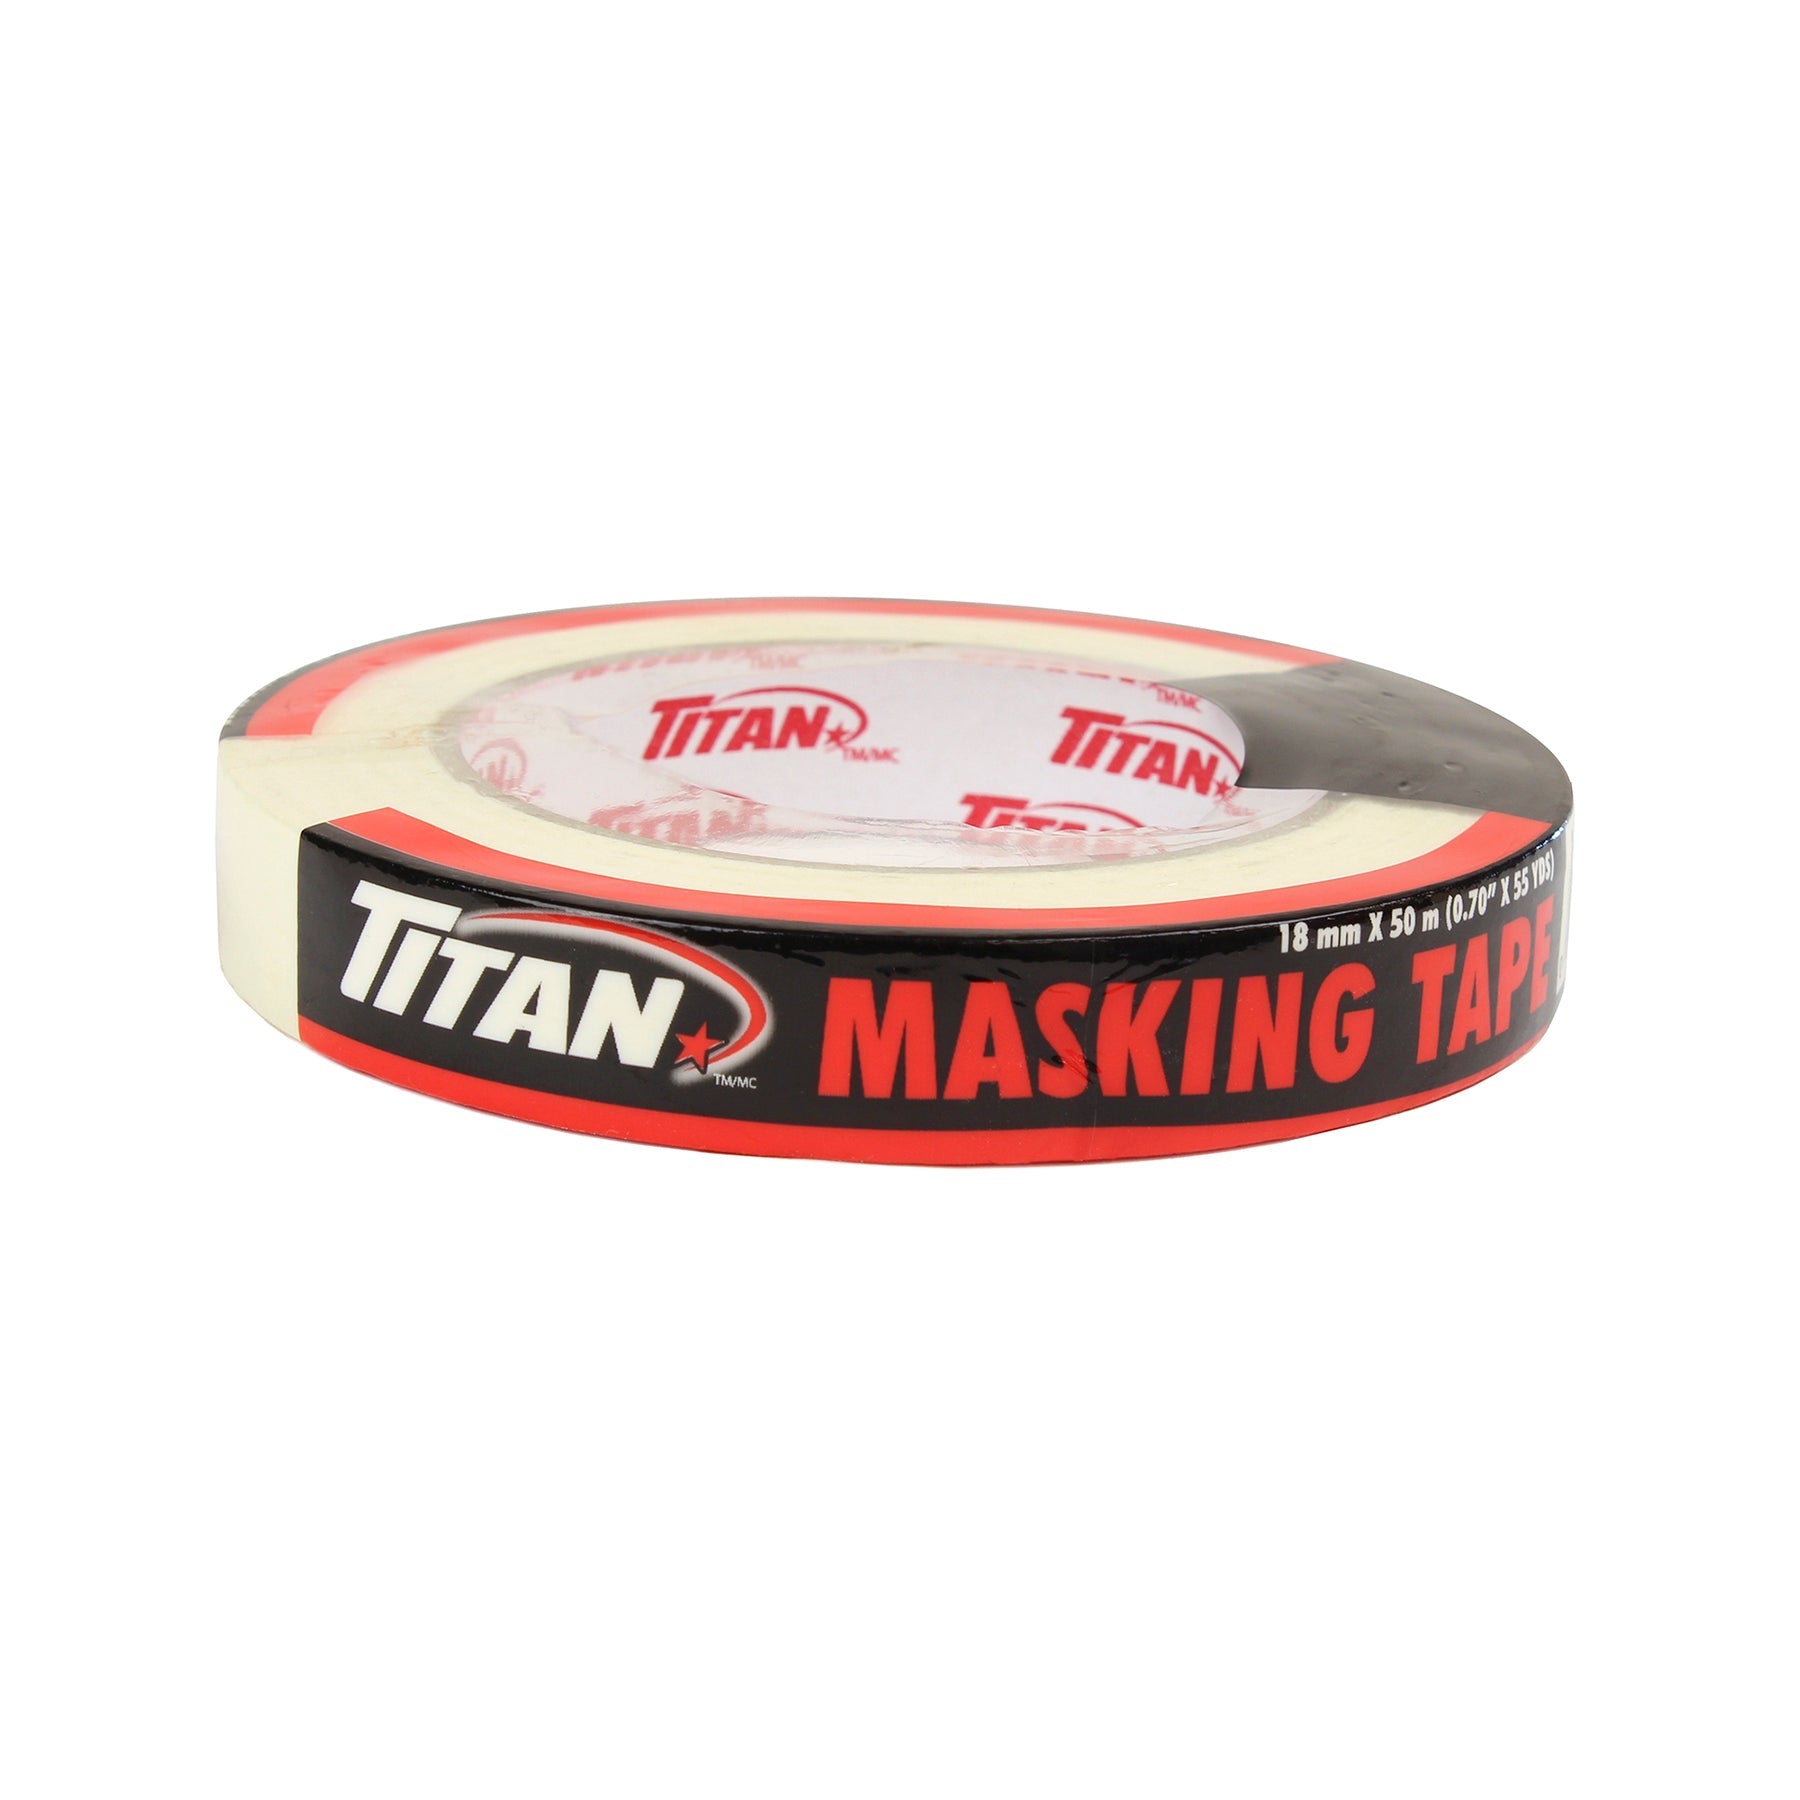 Titan Masking Tape 0.7in x 164ft  (18mm x 50m) 